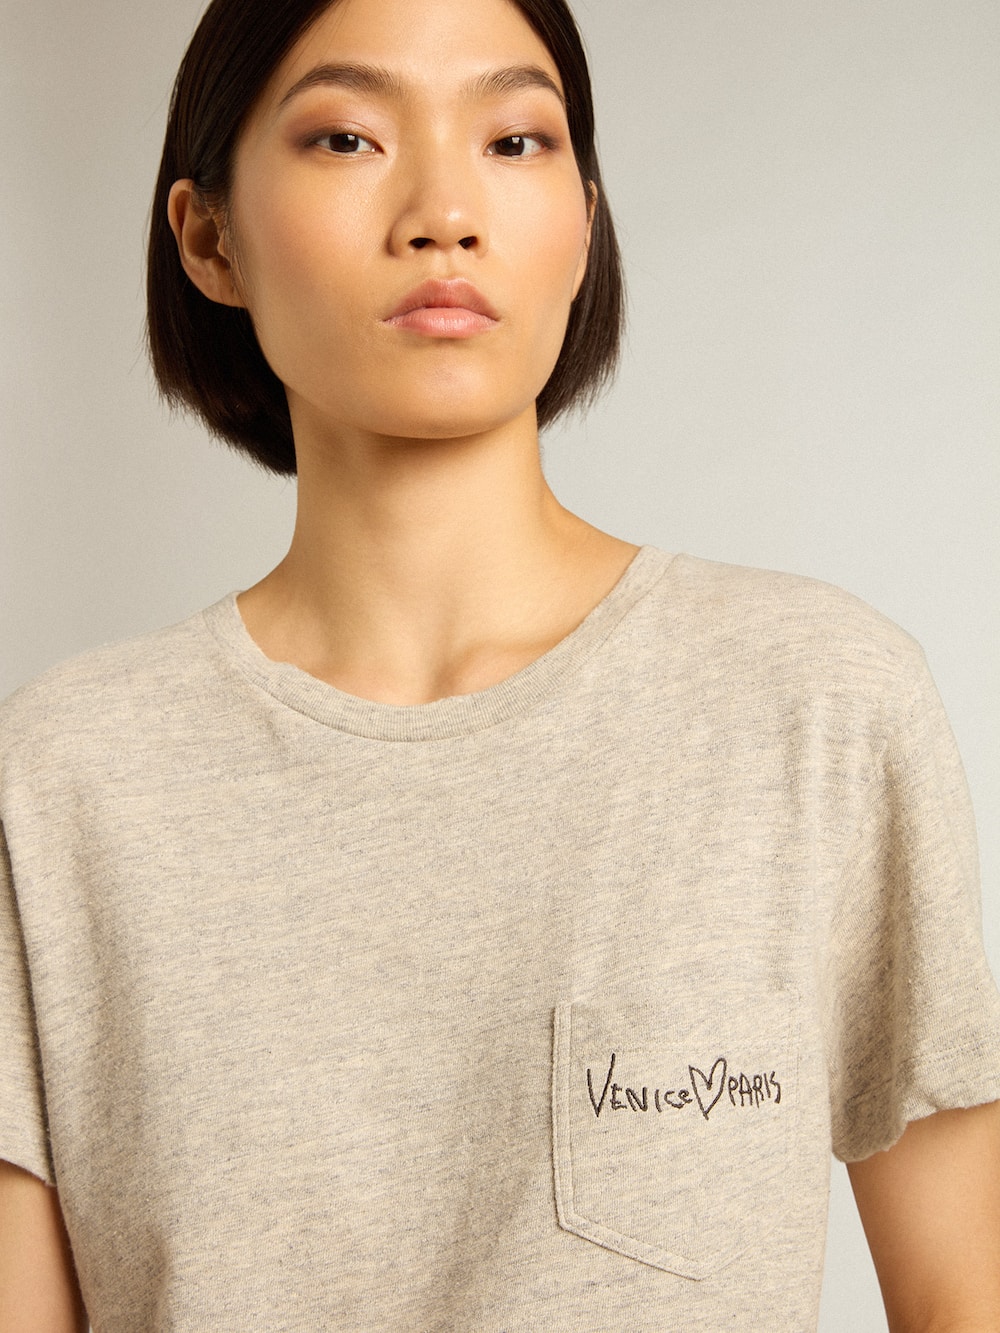 Golden Goose - T-shirt femme en coton gris chiné avec inscription brodée in 